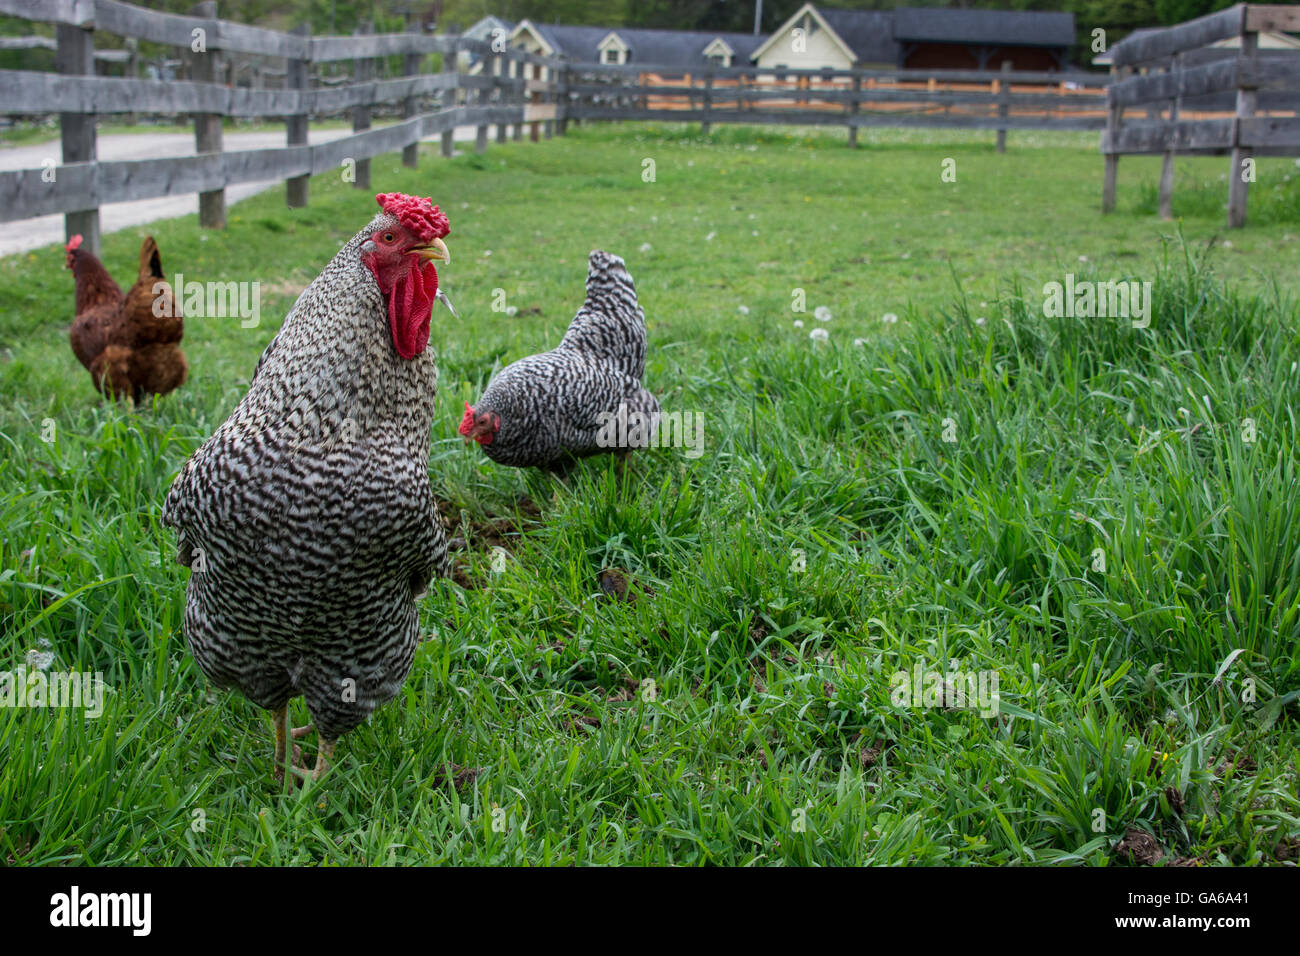 En Cooperstown, Nueva York. Blanco y negro gallo de corral con gallinas. Foto de stock